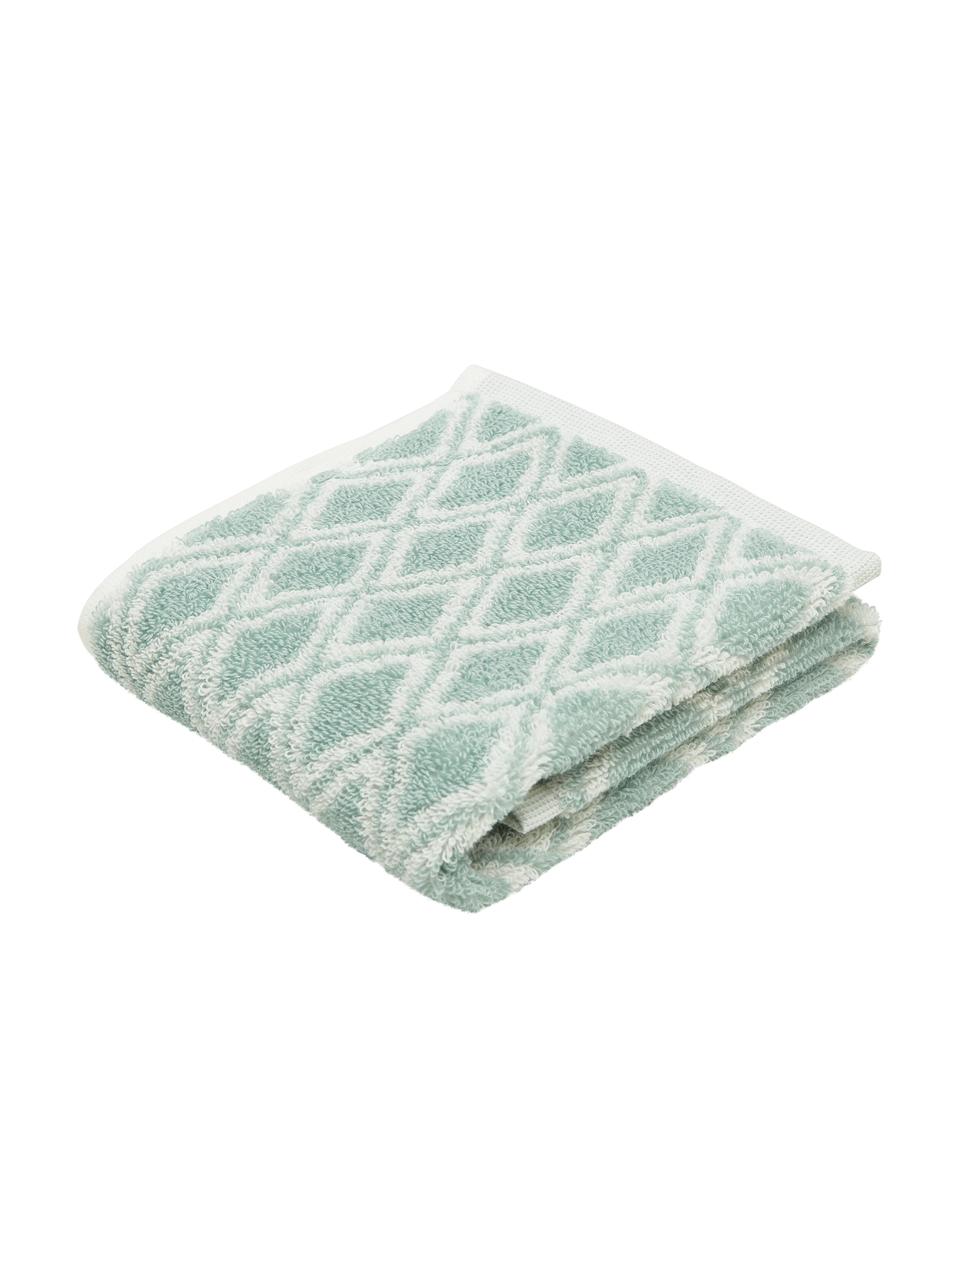 Dubbelzijdige handdoek Ava met grafisch patroon, Mintgroen, crèmewit, Handdoek, B 50 x L 100 cm, 2 stuks